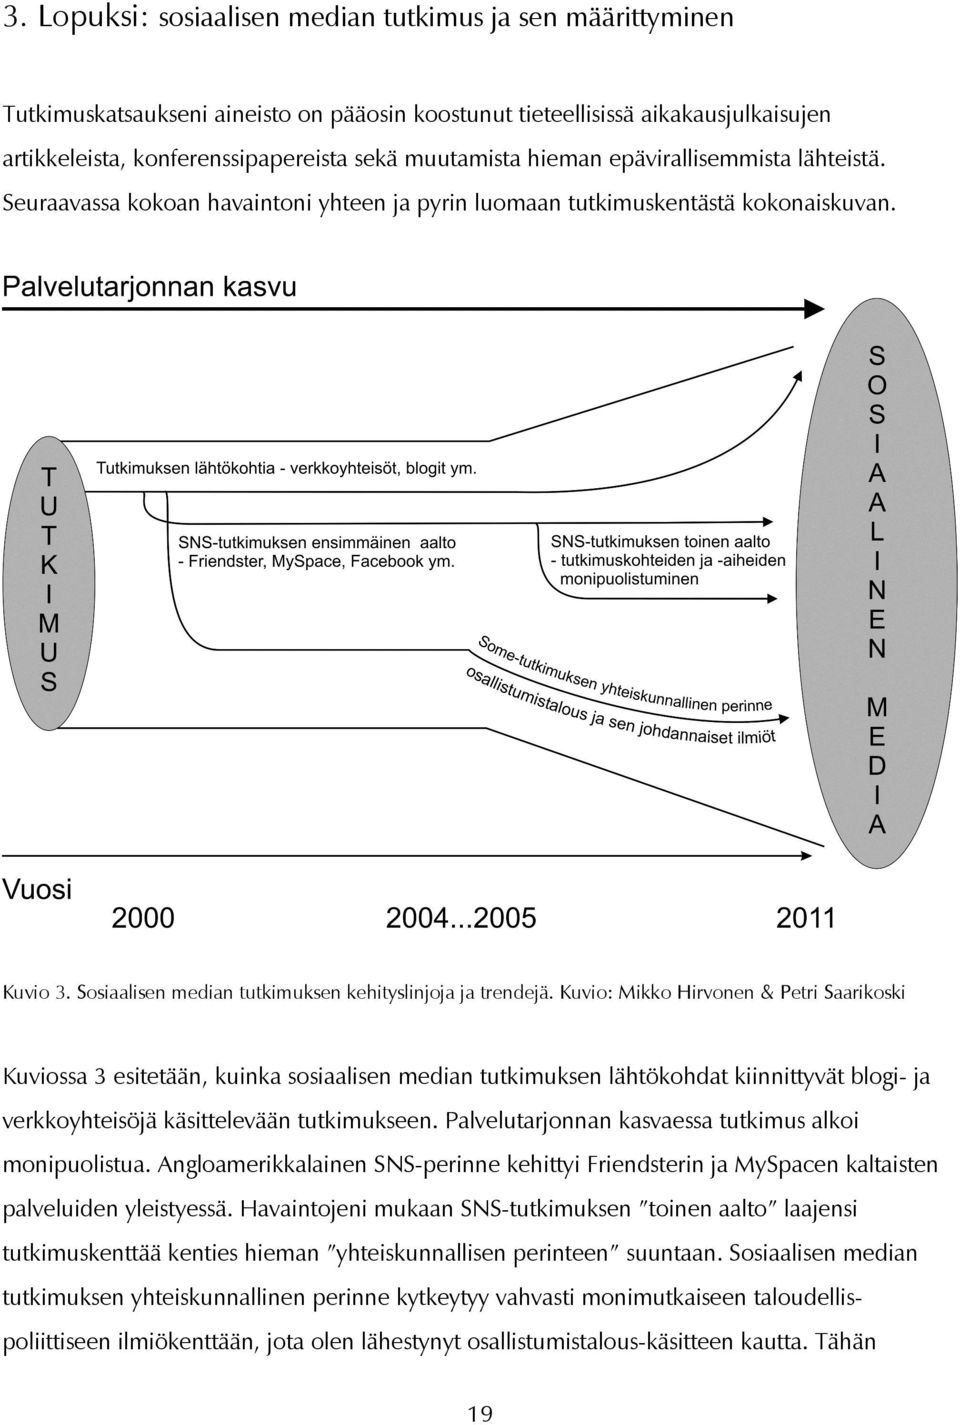 Kuvio: Mikko Hirvonen & Petri Saarikoski Kuviossa 3 esitetään, kuinka sosiaalisen median tutkimuksen lähtökohdat kiinnittyvät blogi- ja verkkoyhteisöjä käsittelevään tutkimukseen.